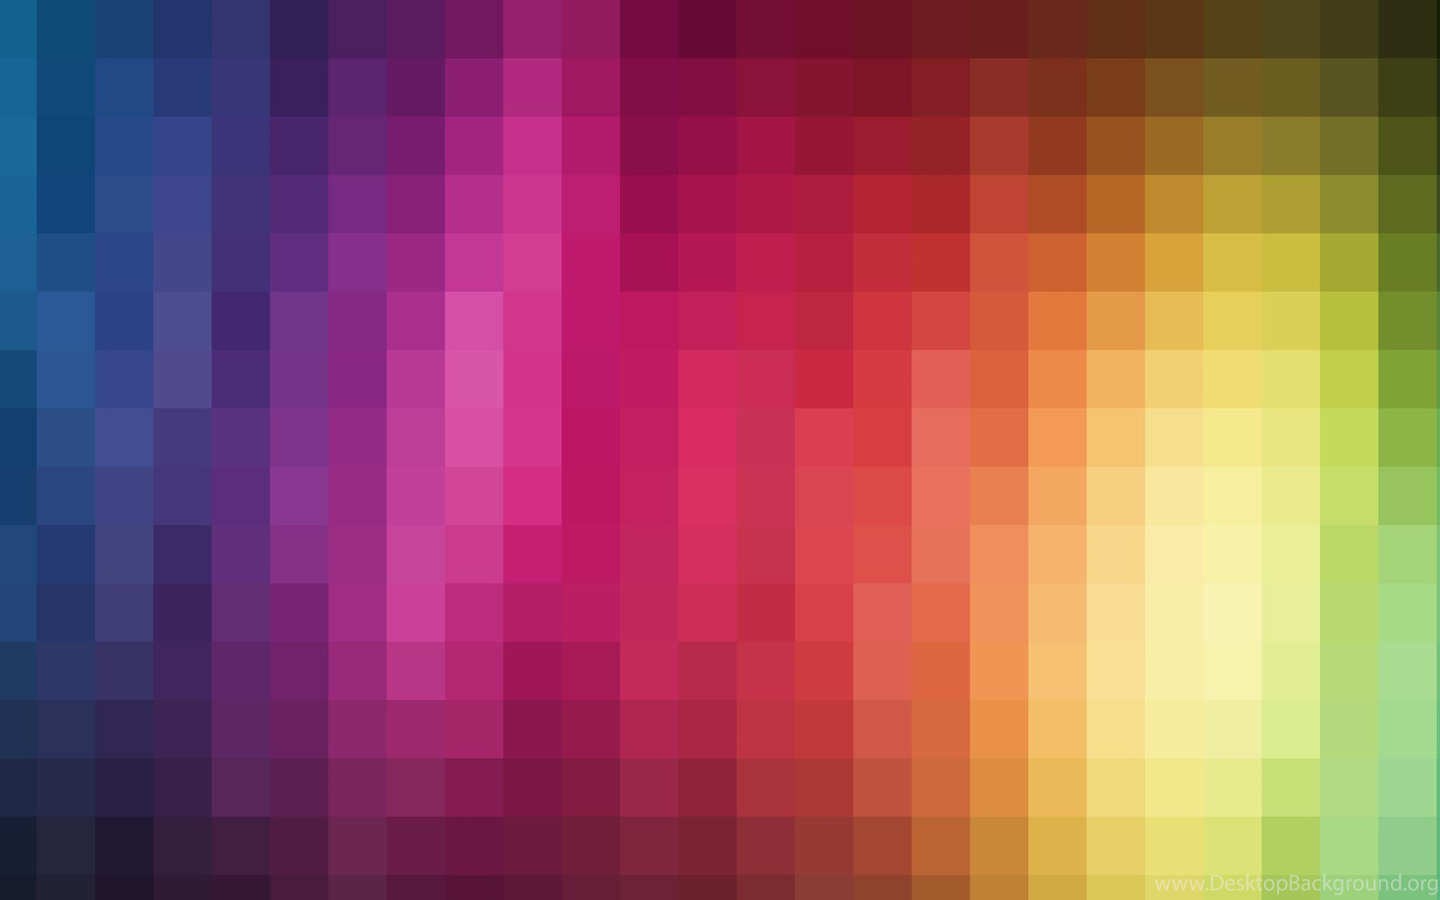 15 2048 Pixels Wide By 1152 Pixel Tall Hd Wallpapers Desktop